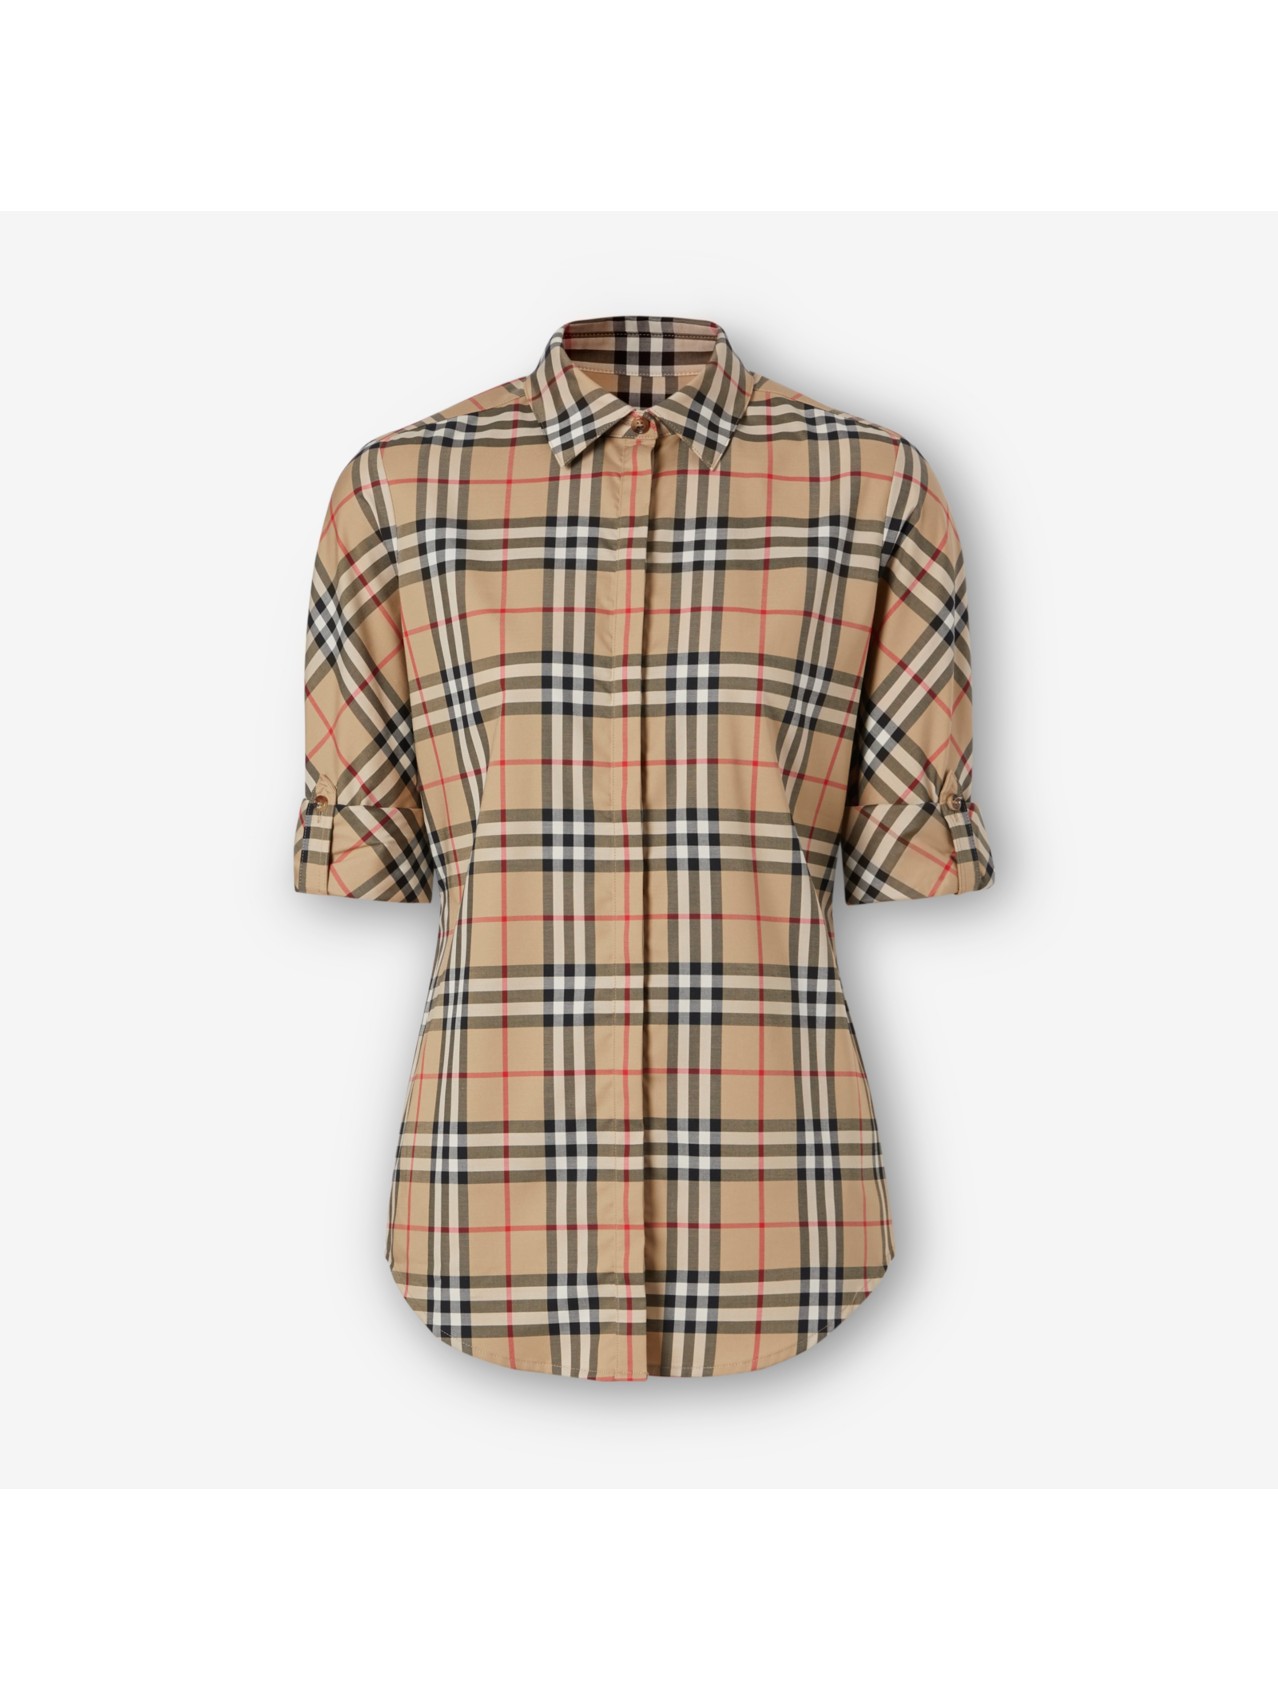 Camisas y camisetas para mujer en seda y algodón | Burberry® oficial